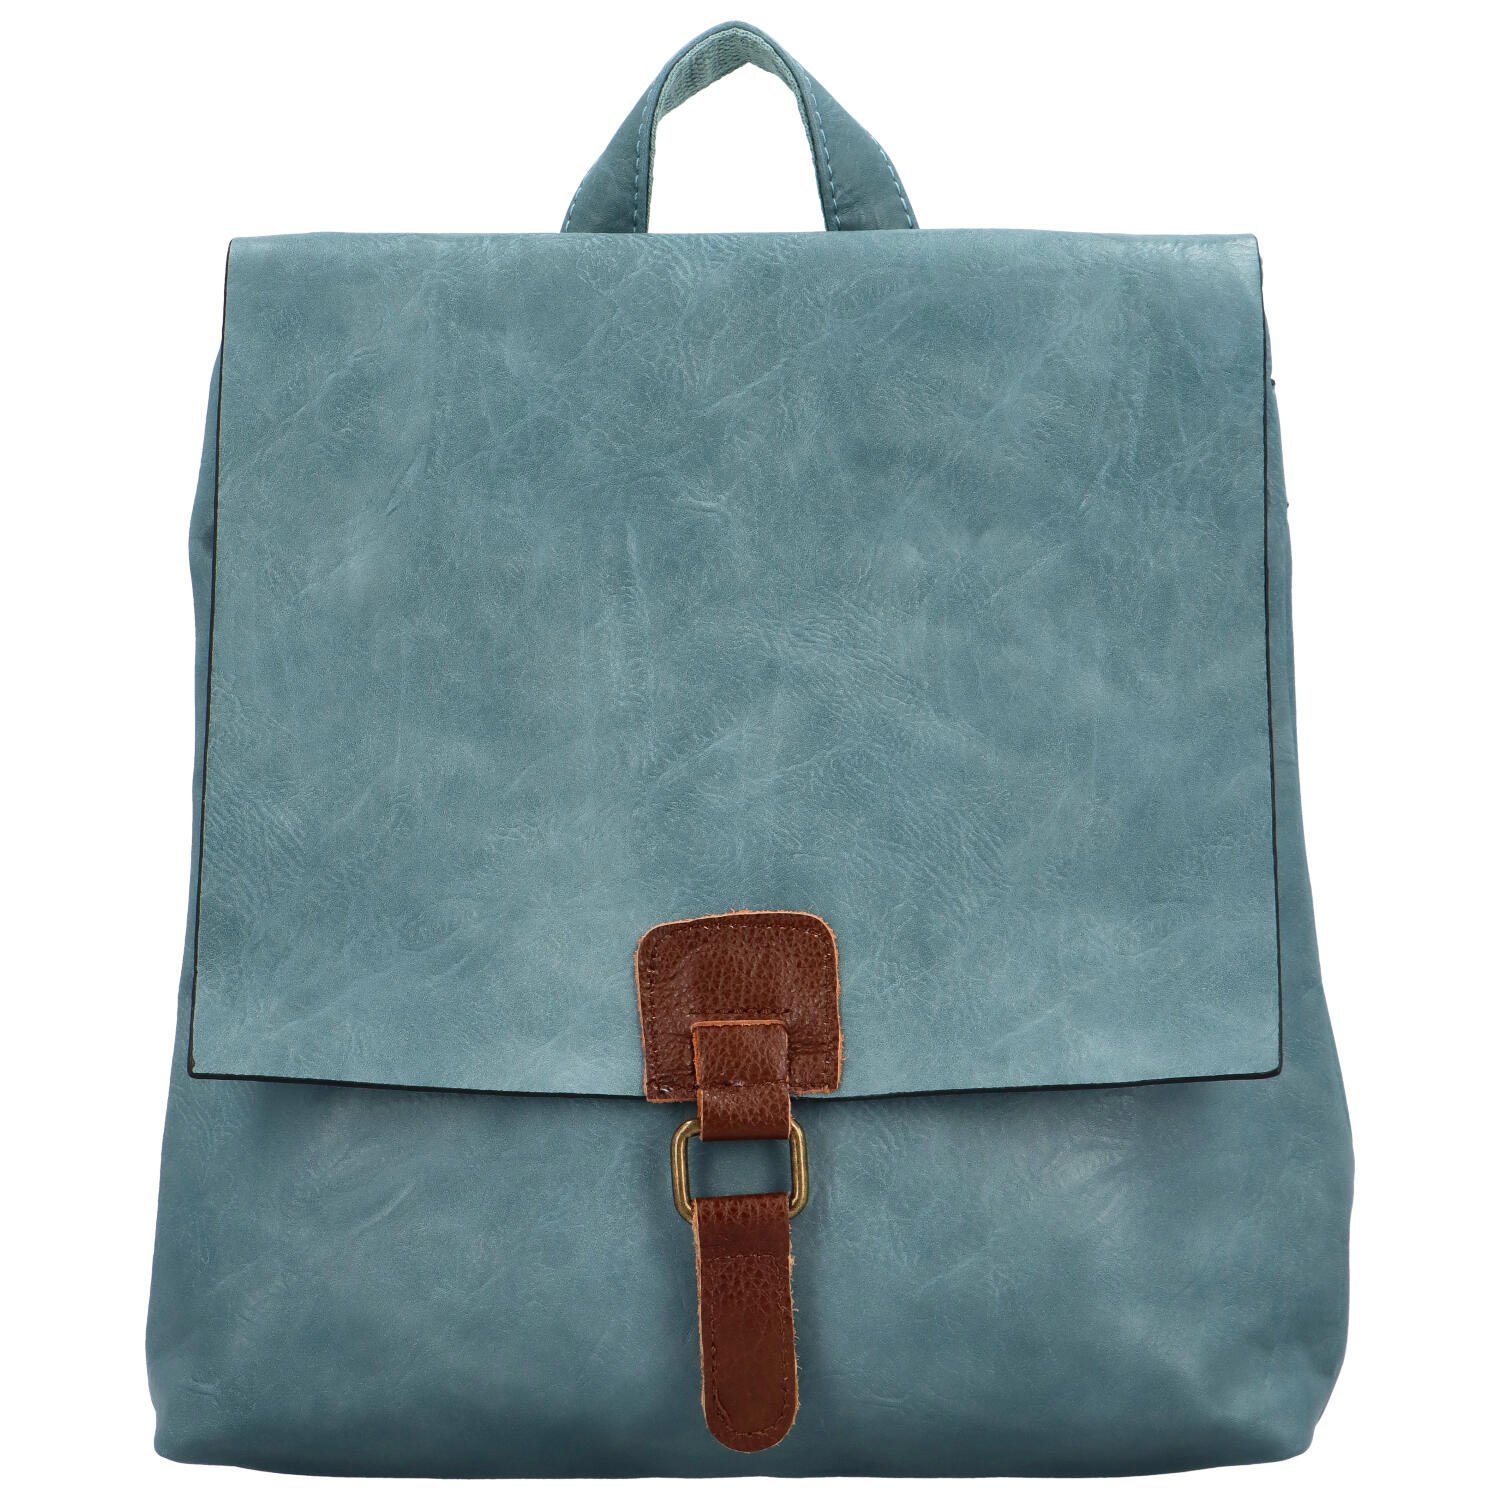 Dámský kabelko/batoh džínově modrý - Paolo bags Olefir